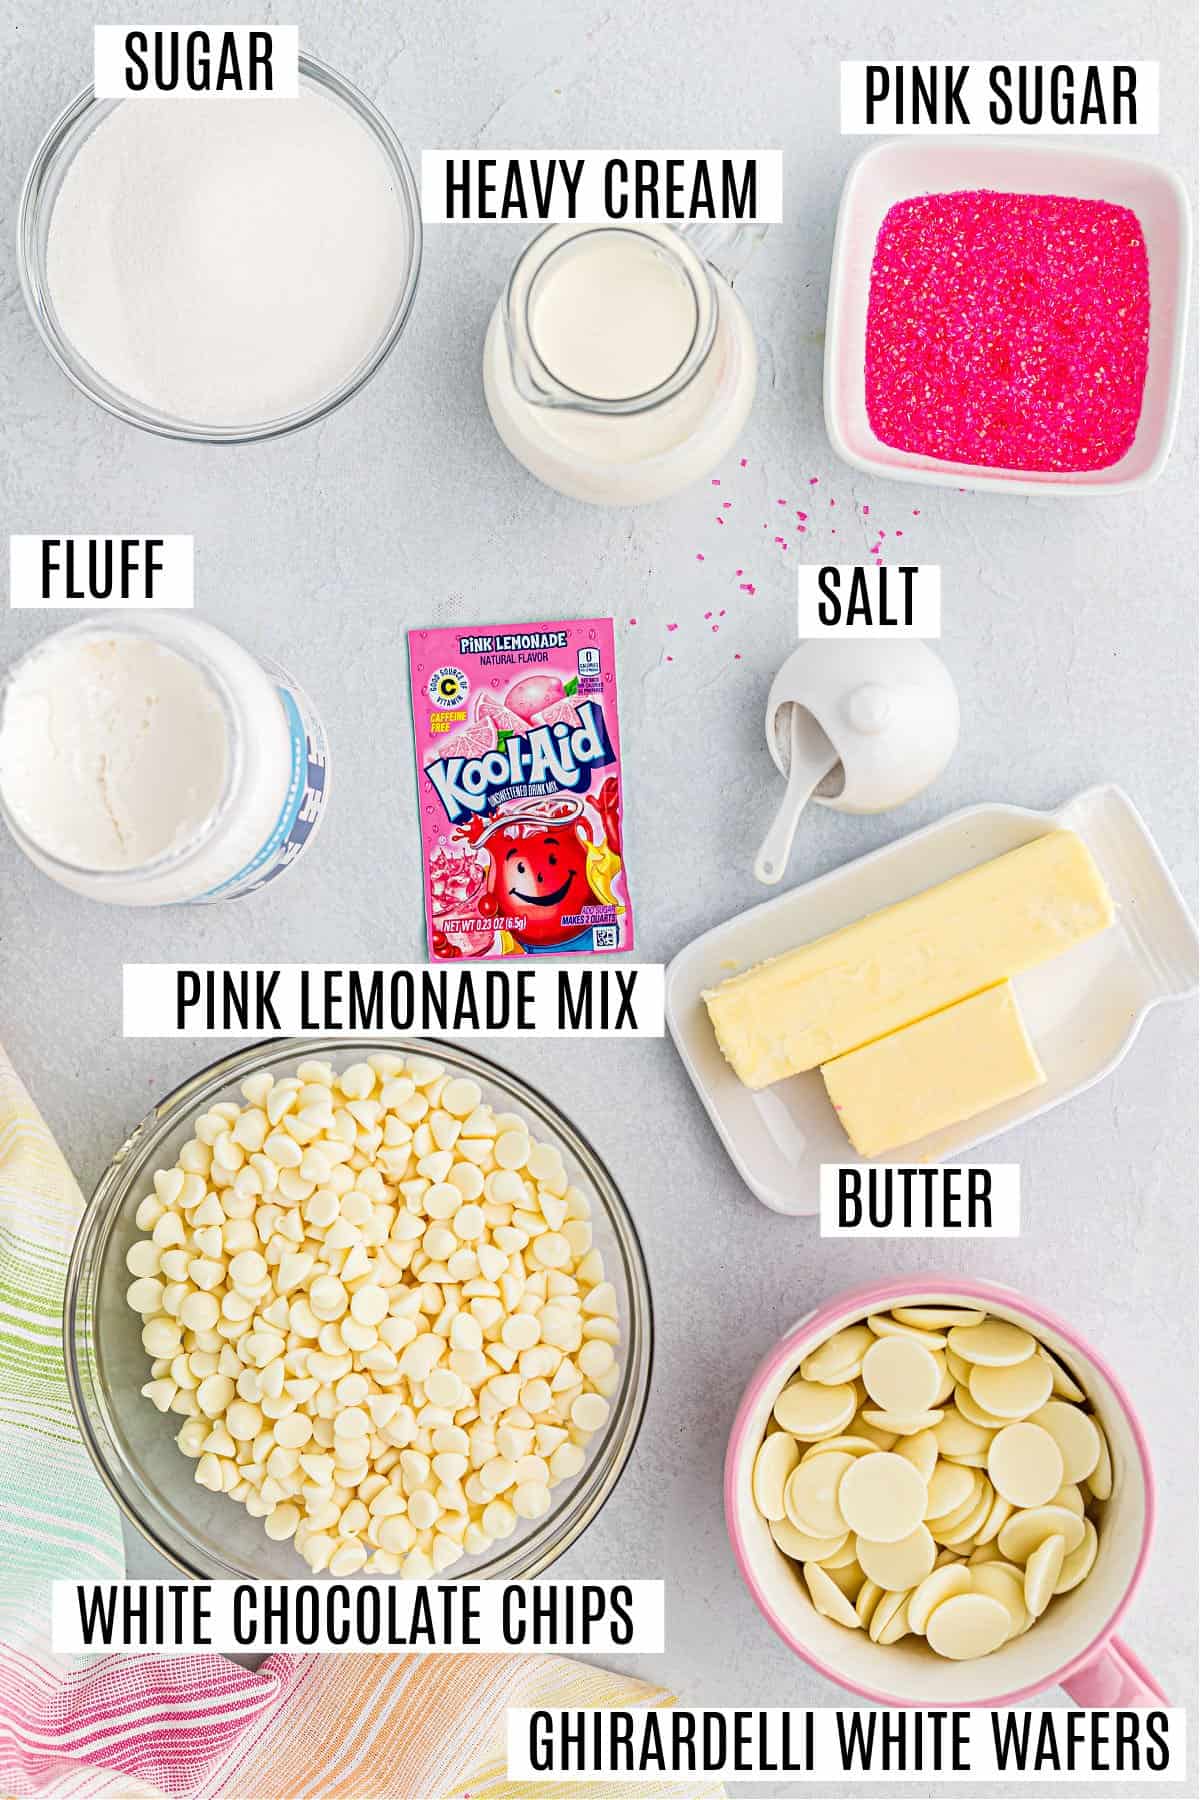 Pink lemonade recipe - how to make pink lemonade